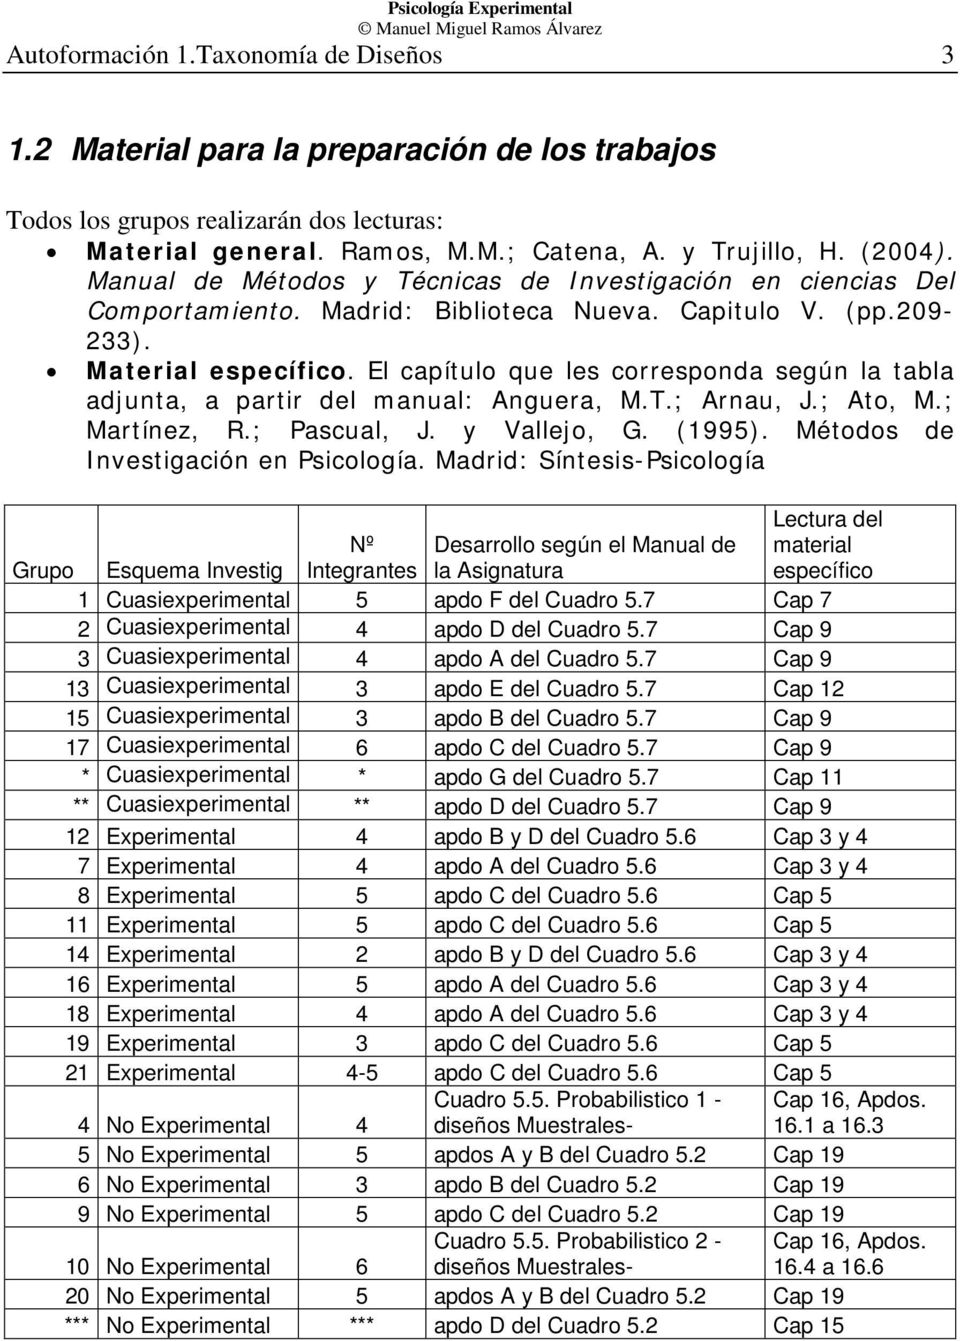 El capítulo que les corresponda según la tabla adjunta, a partir del manual: Anguera, M.T.; Arnau, J.; Ato, M.; Martínez, R.; Pascual, J. y Vallejo, G. (1995). Métodos de Investigación en Psicología.